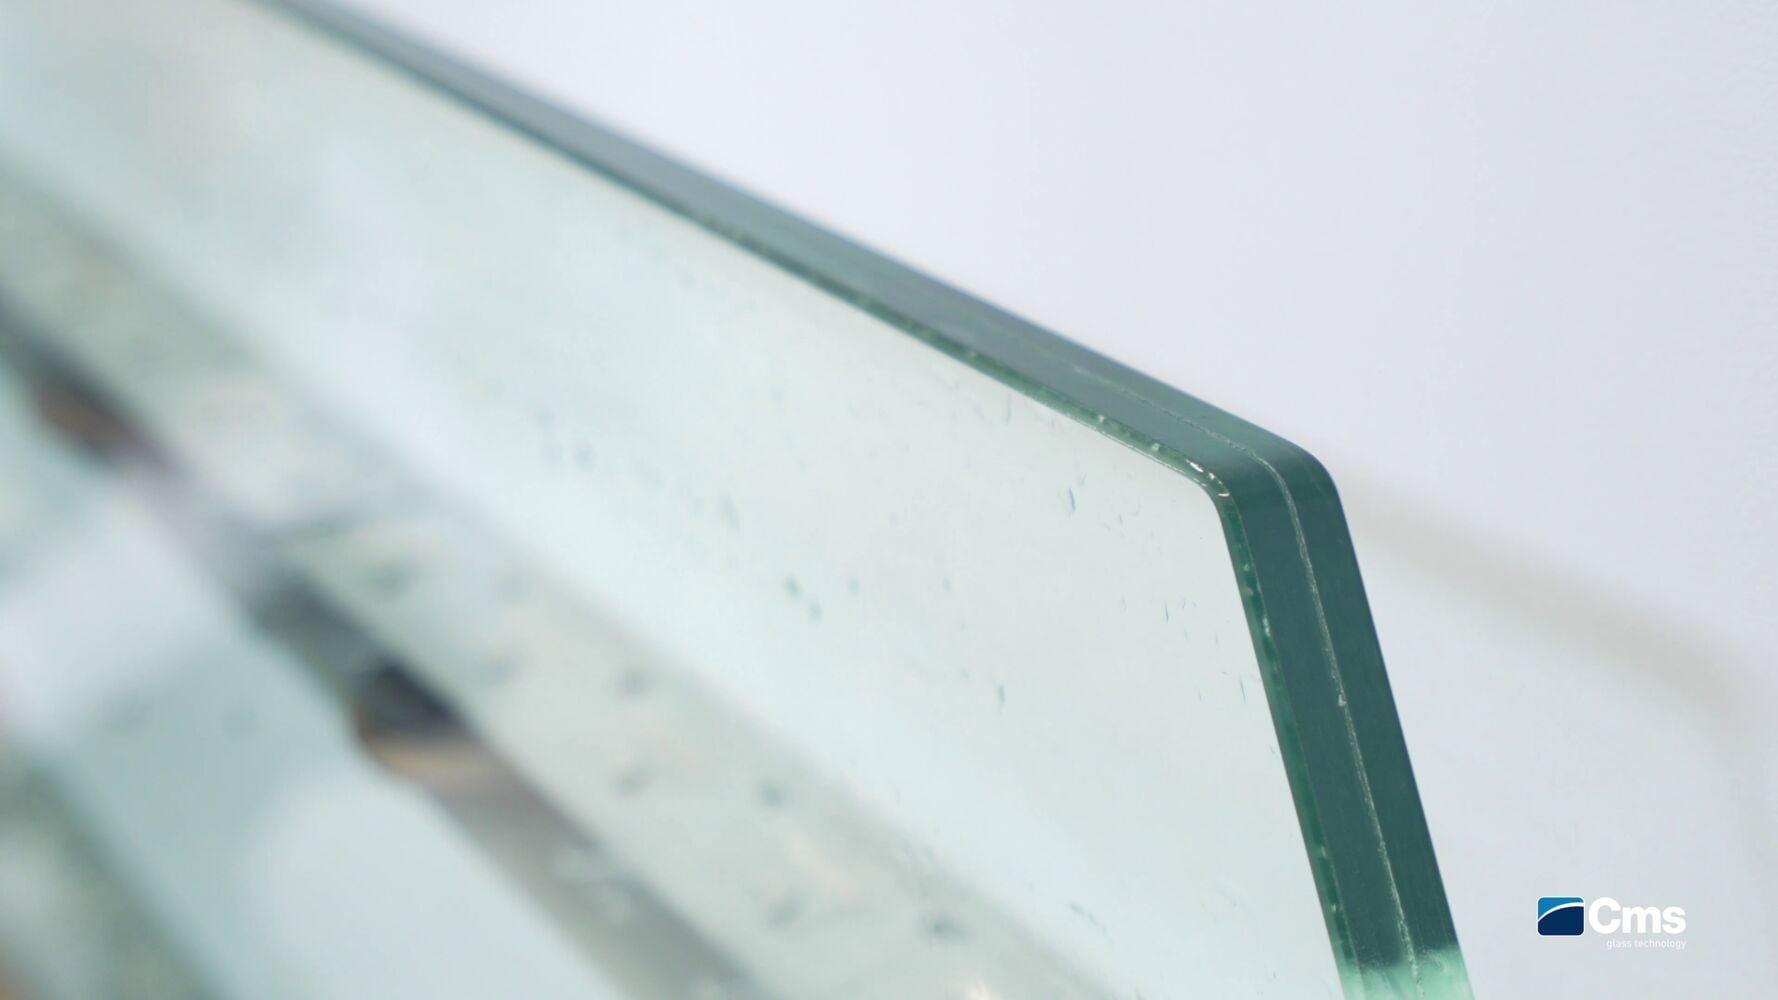 Les solutions de CMS pour l'usinage du verre dans la décoration d'intérieur ! 